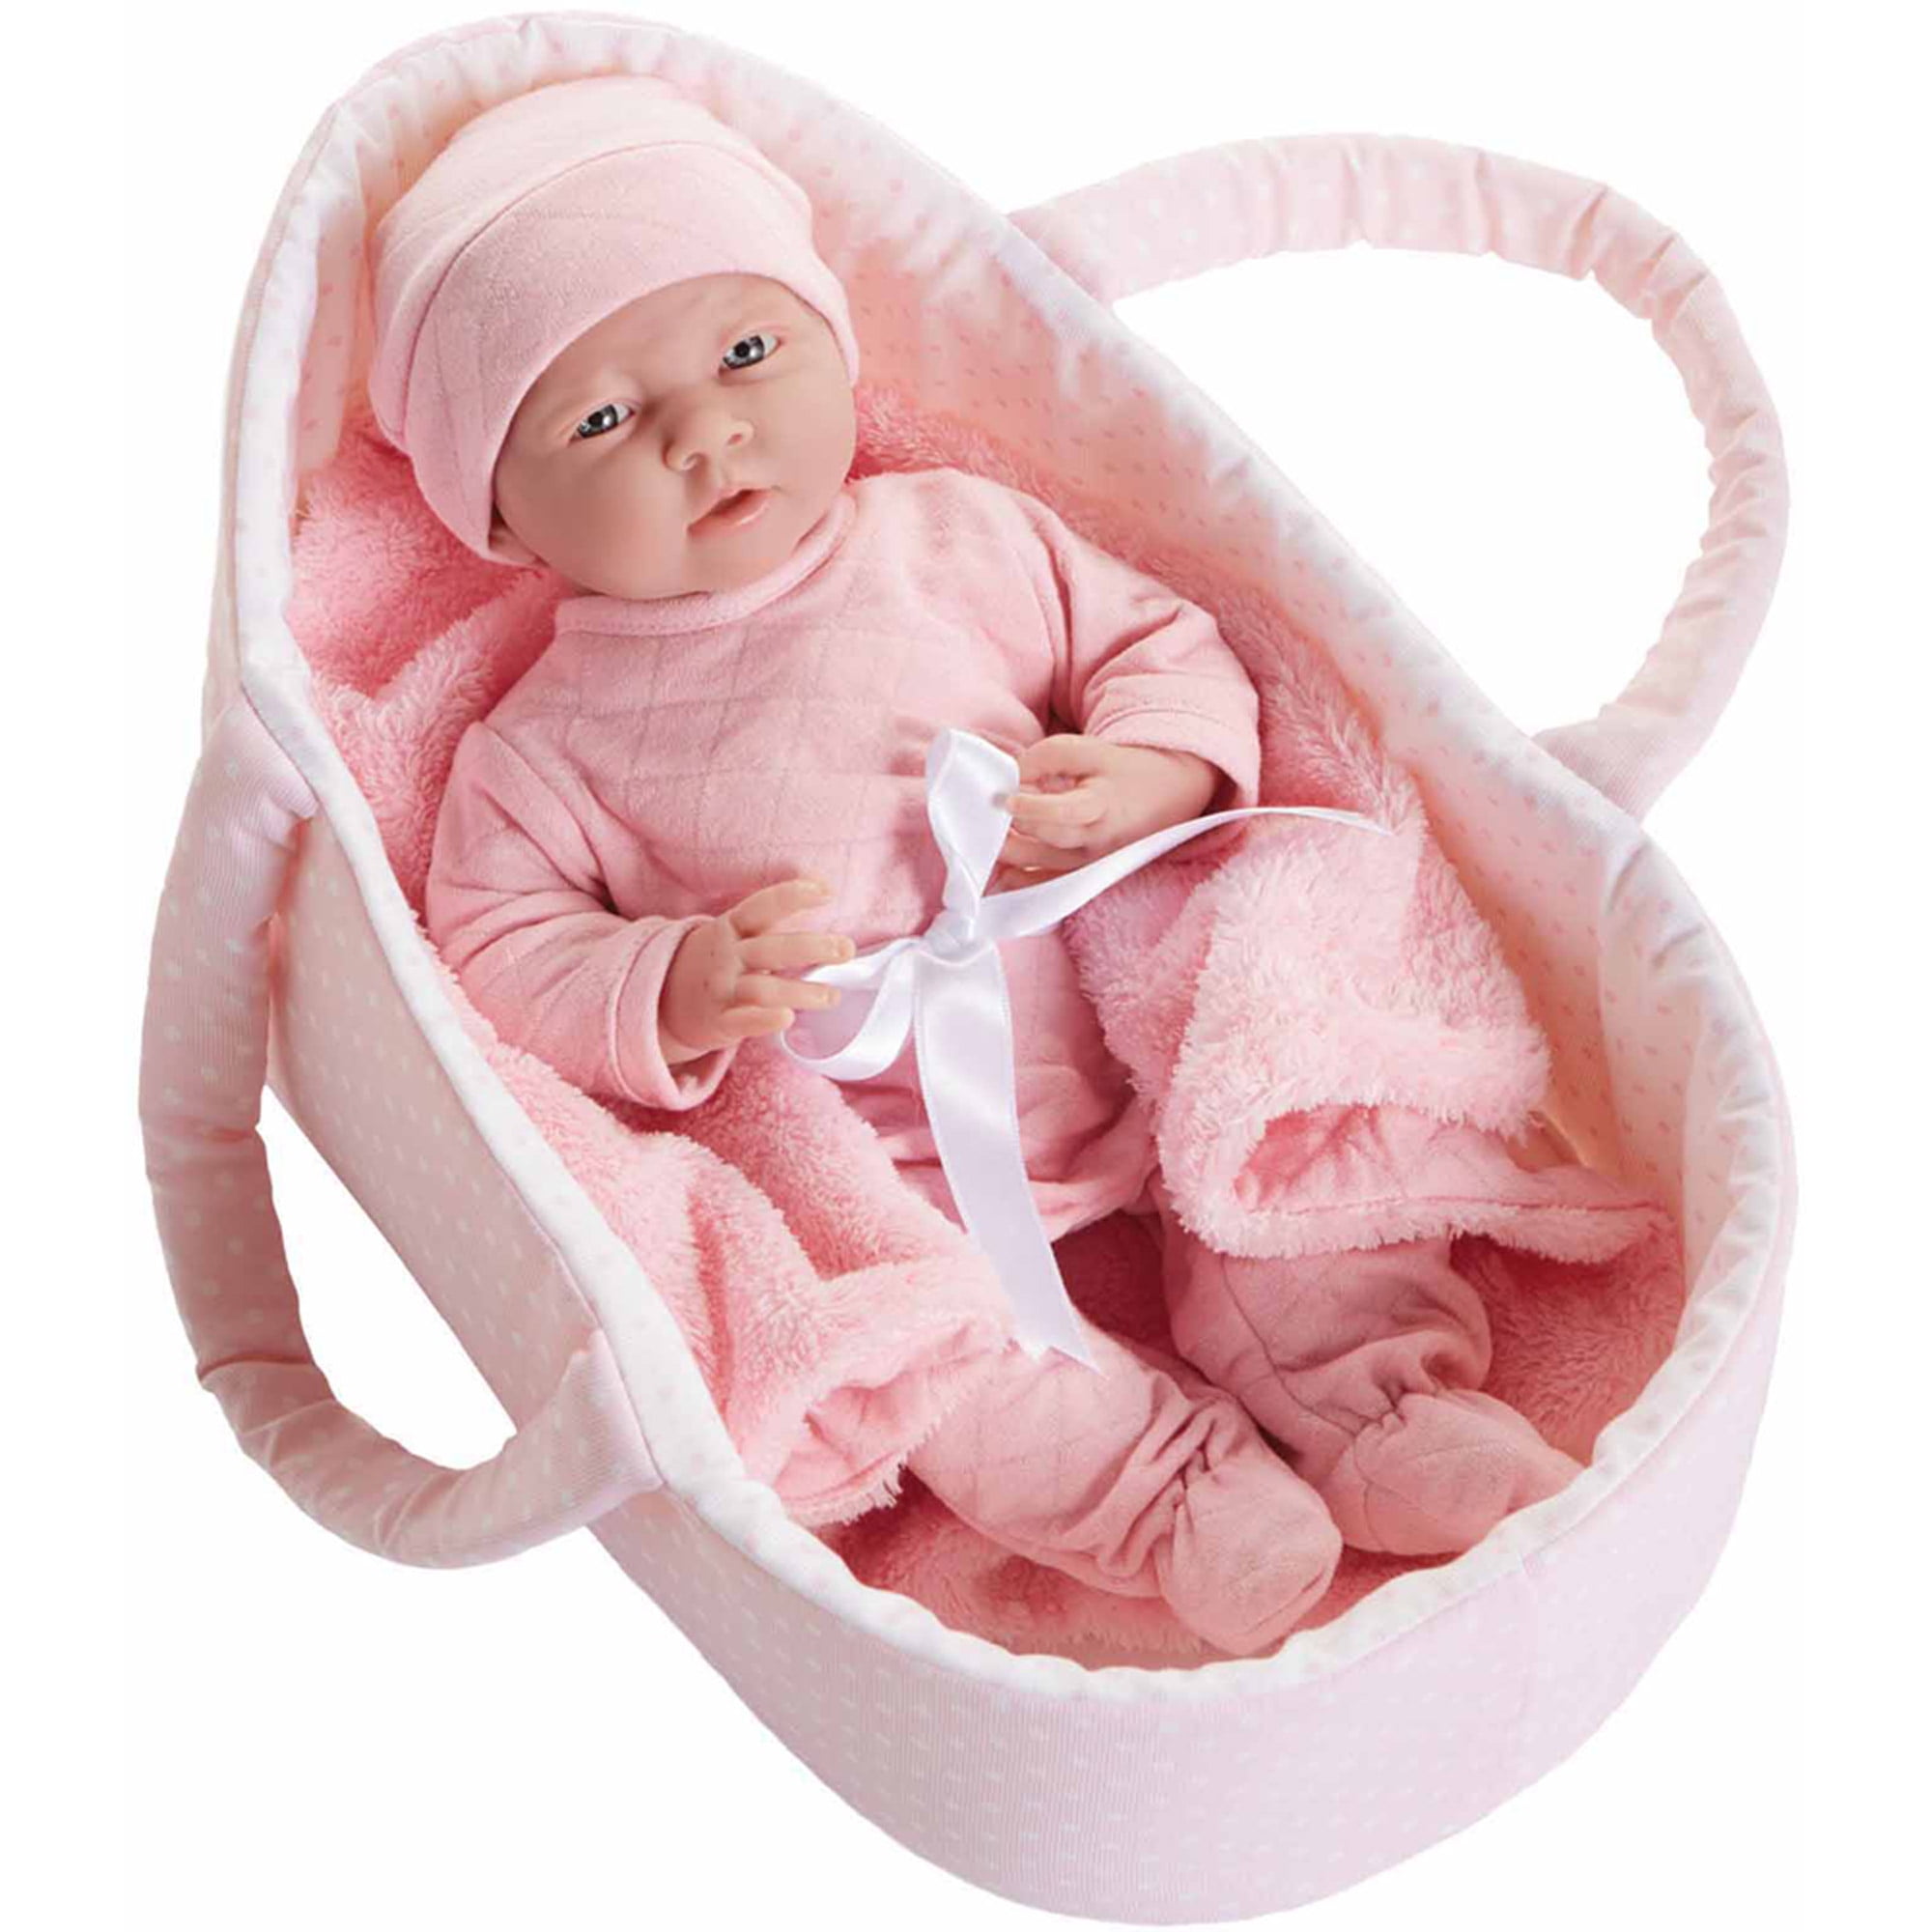 baby carrier basket newborn